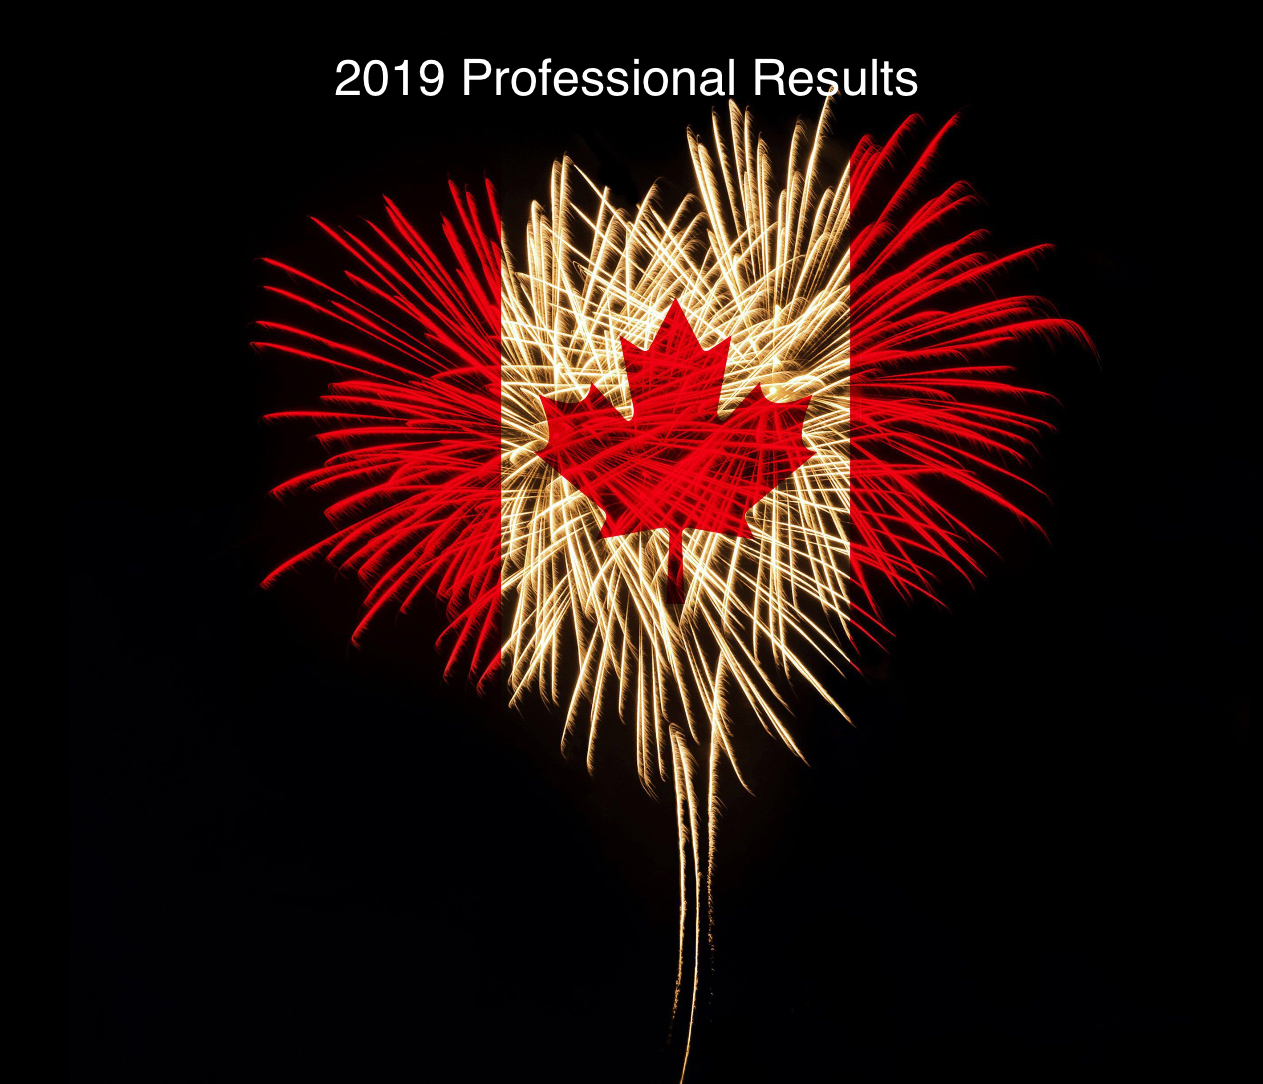 Championnats Canadien 2019 Résultats Professionnels